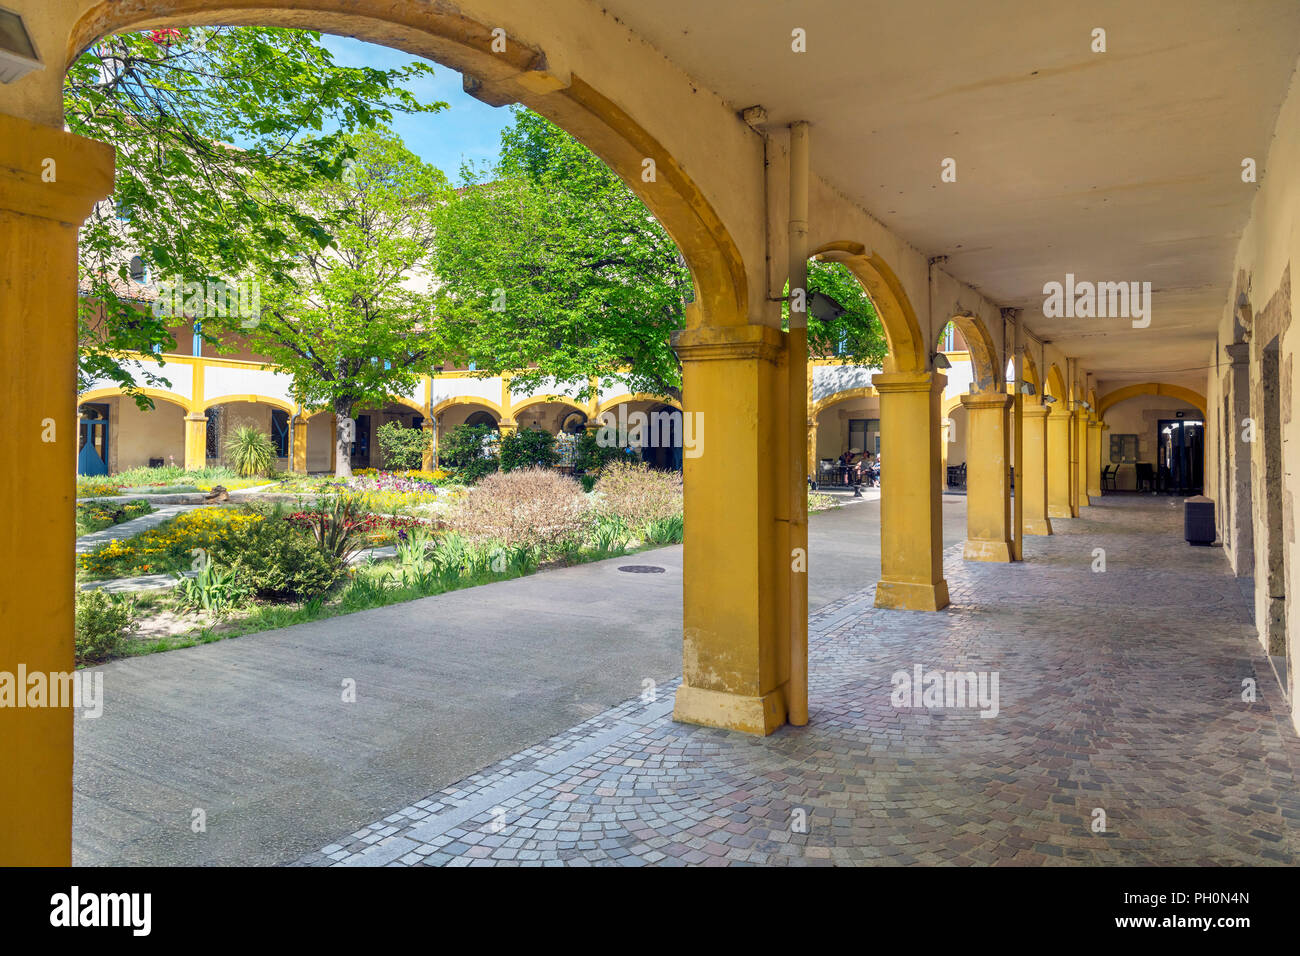 Portique dans la cour de l'hôpital à Arles, maintenant appelé l'espace Van Gogh, Arles, Provence, France Banque D'Images